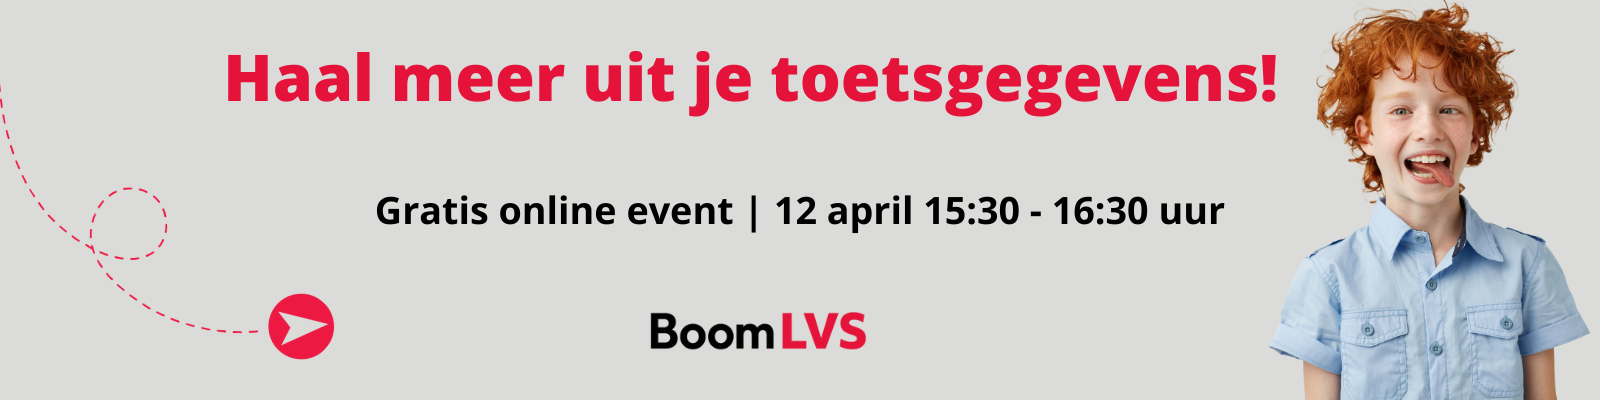 Boom LVS event Haal meer uit je toetsgegevens